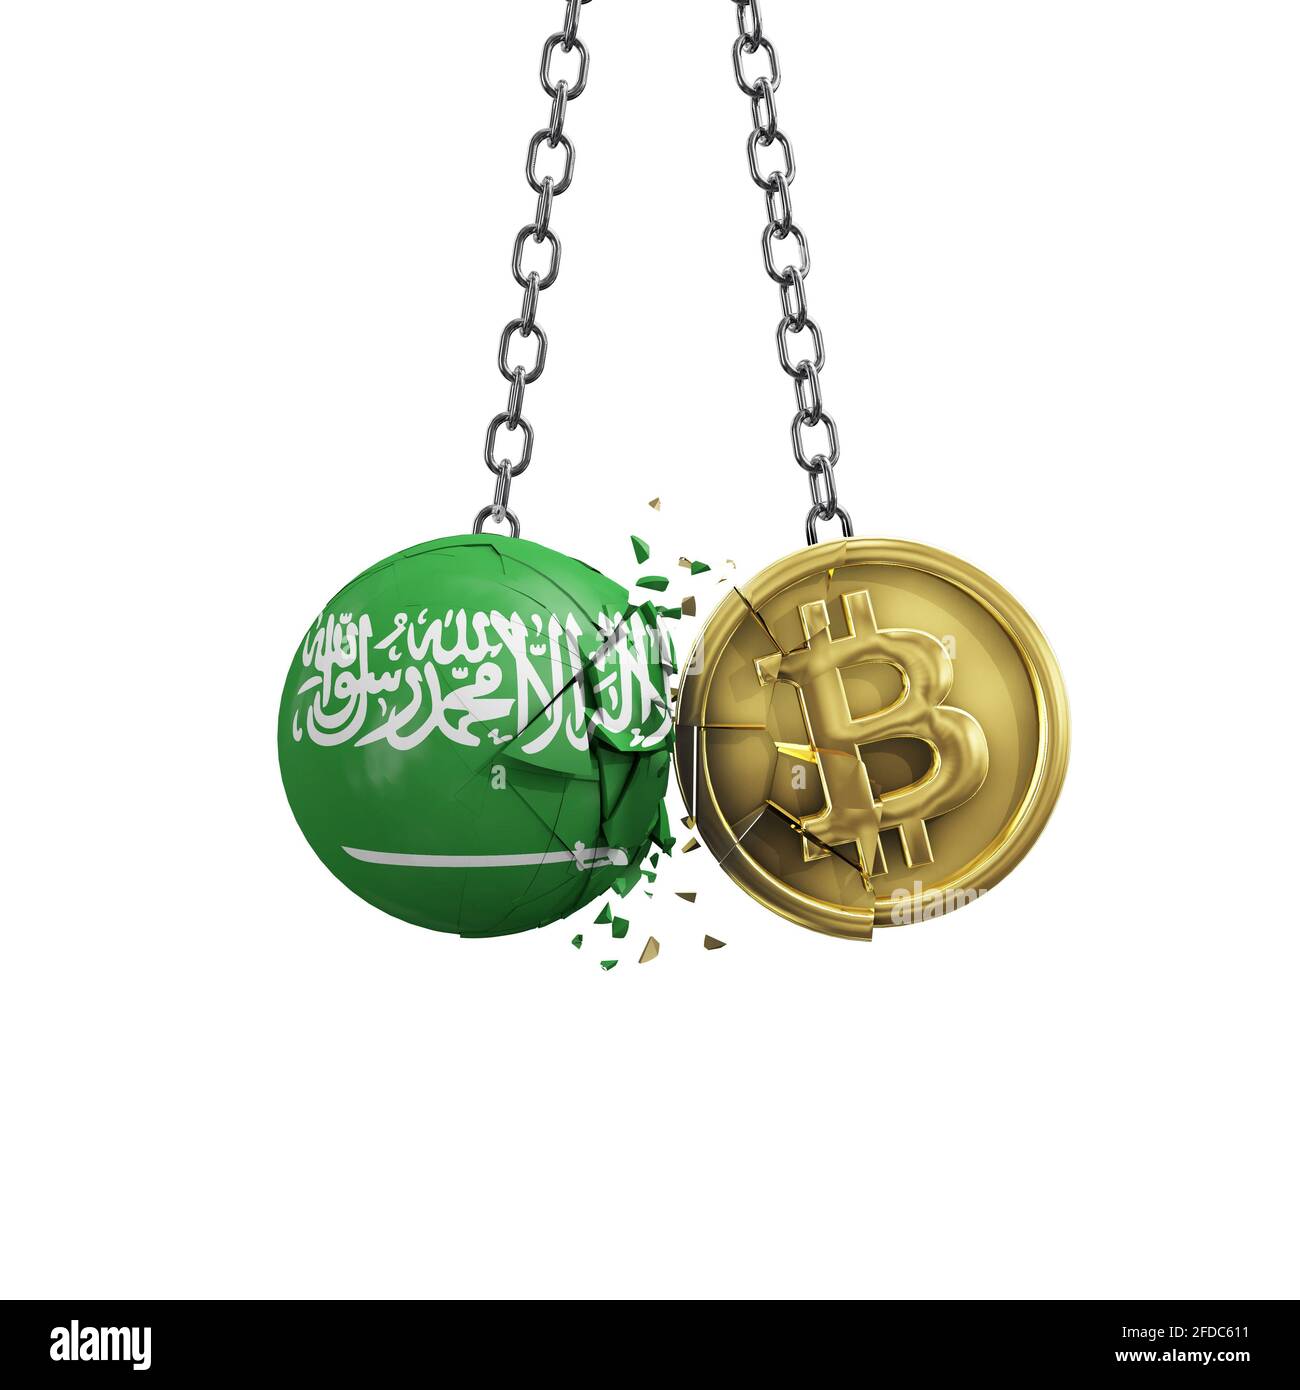 Saudi Arabia flag smashing into a gold bitcoin crypto coin. 3D Rendering Stock Photo